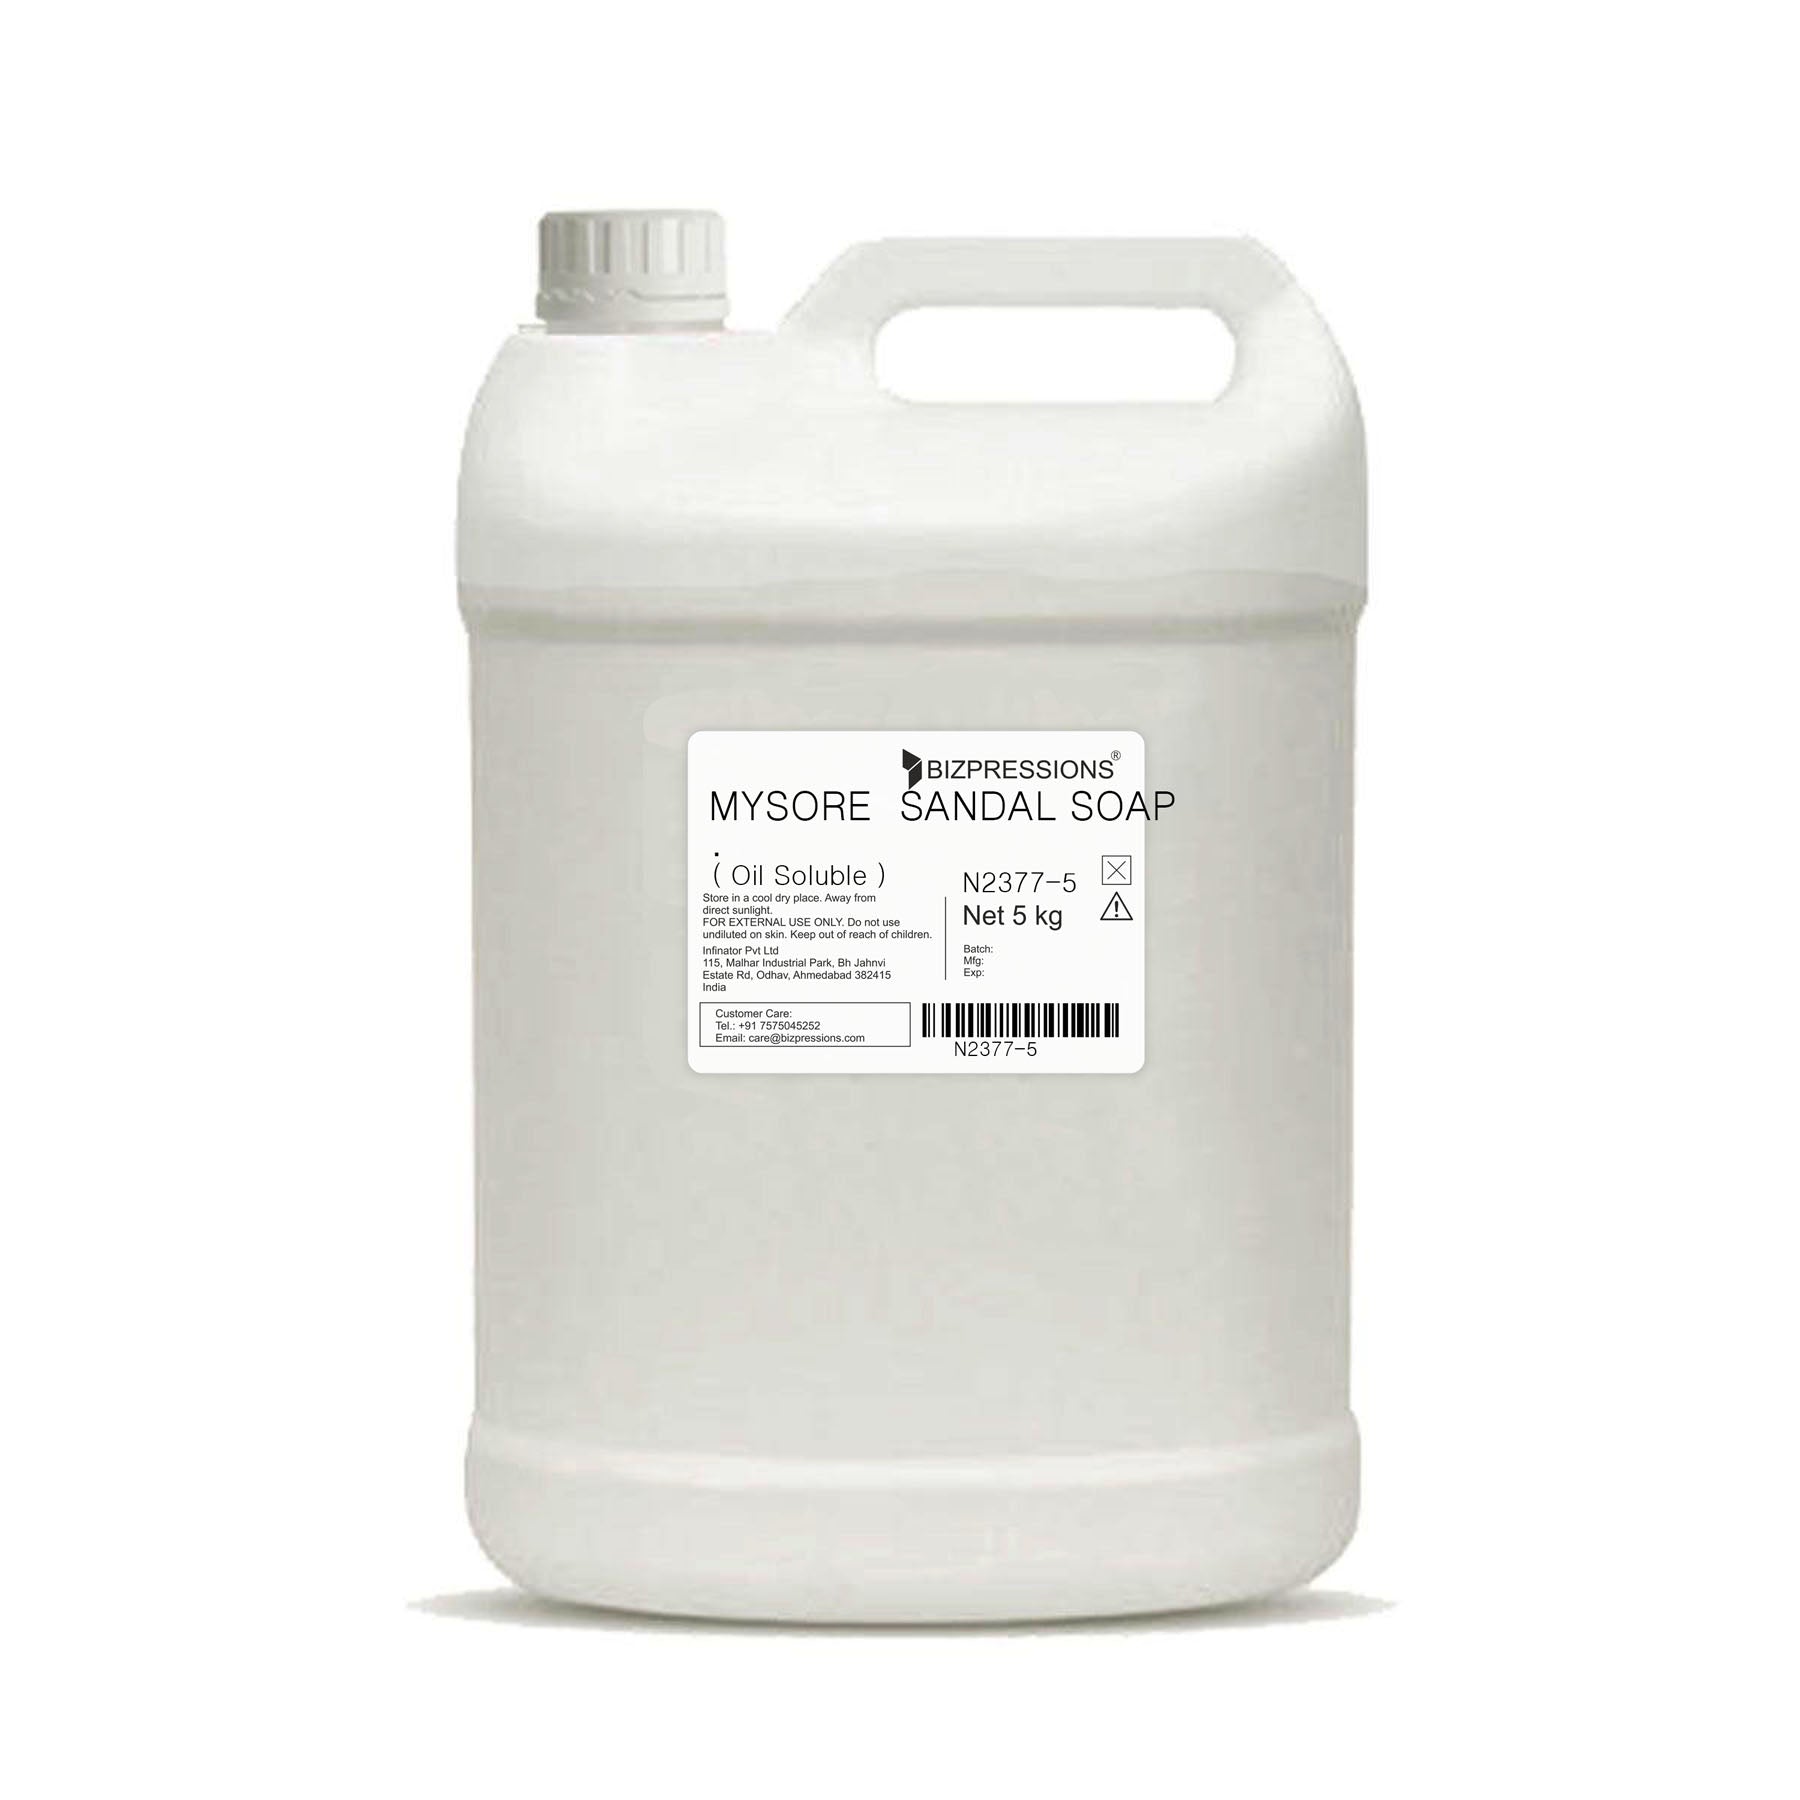 MYSORE SANDAL SOAP - Fragrance ( Oil Soluble ) - 5 kg